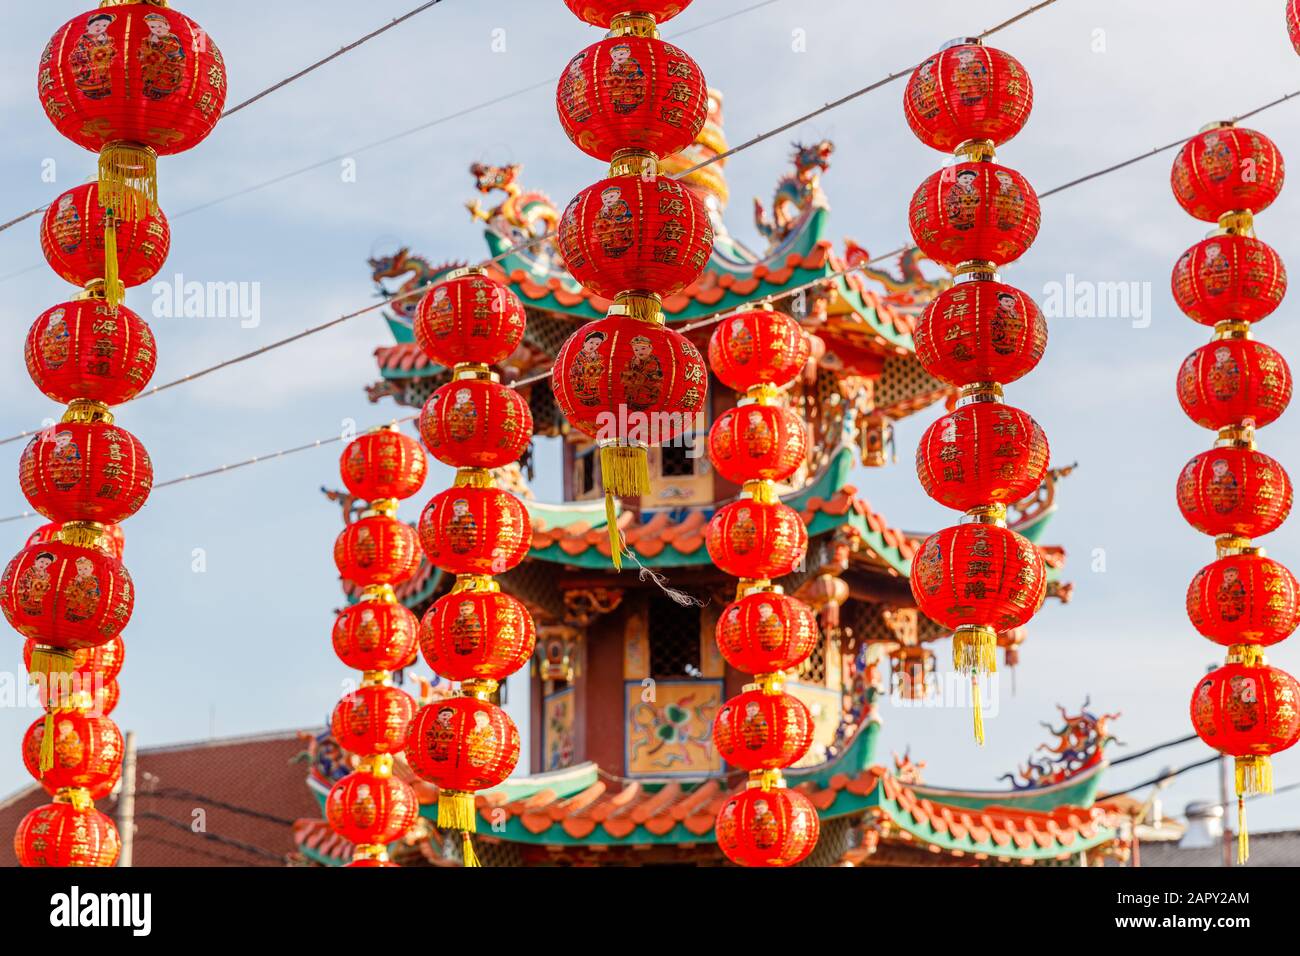 Lanterne rosse per la celebrazione del Capodanno cinese lunare a Vihara Satya Dharma, tempio buddista cinese a Benoa, Bali, Indonesia. Foto Stock